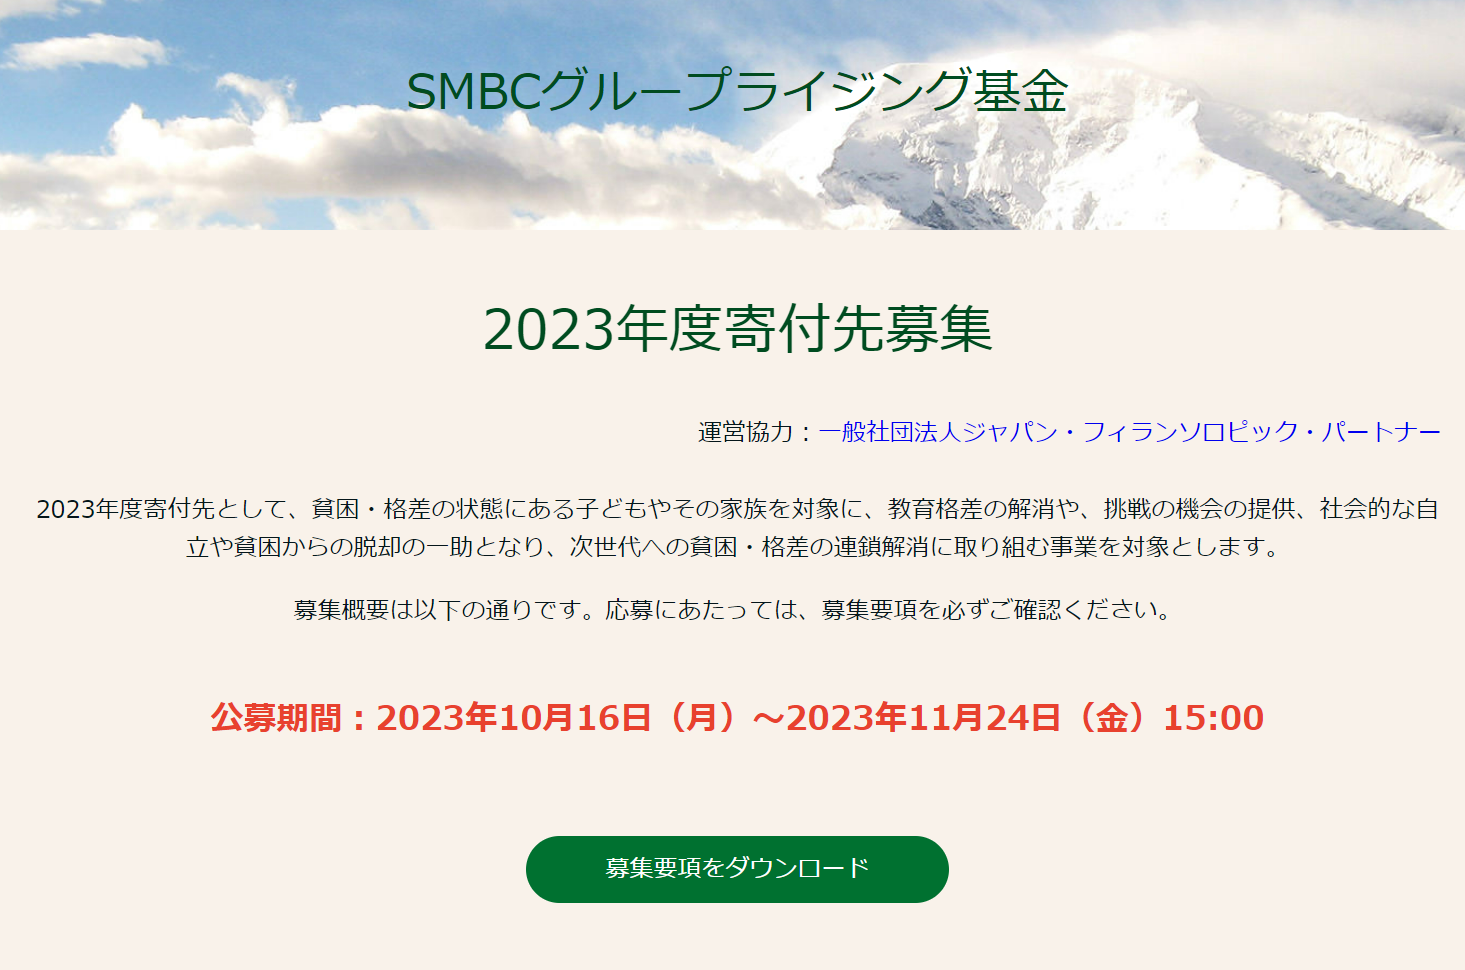 【11/24〆切】SMBCグループライジング基金2023年度寄付先募集について